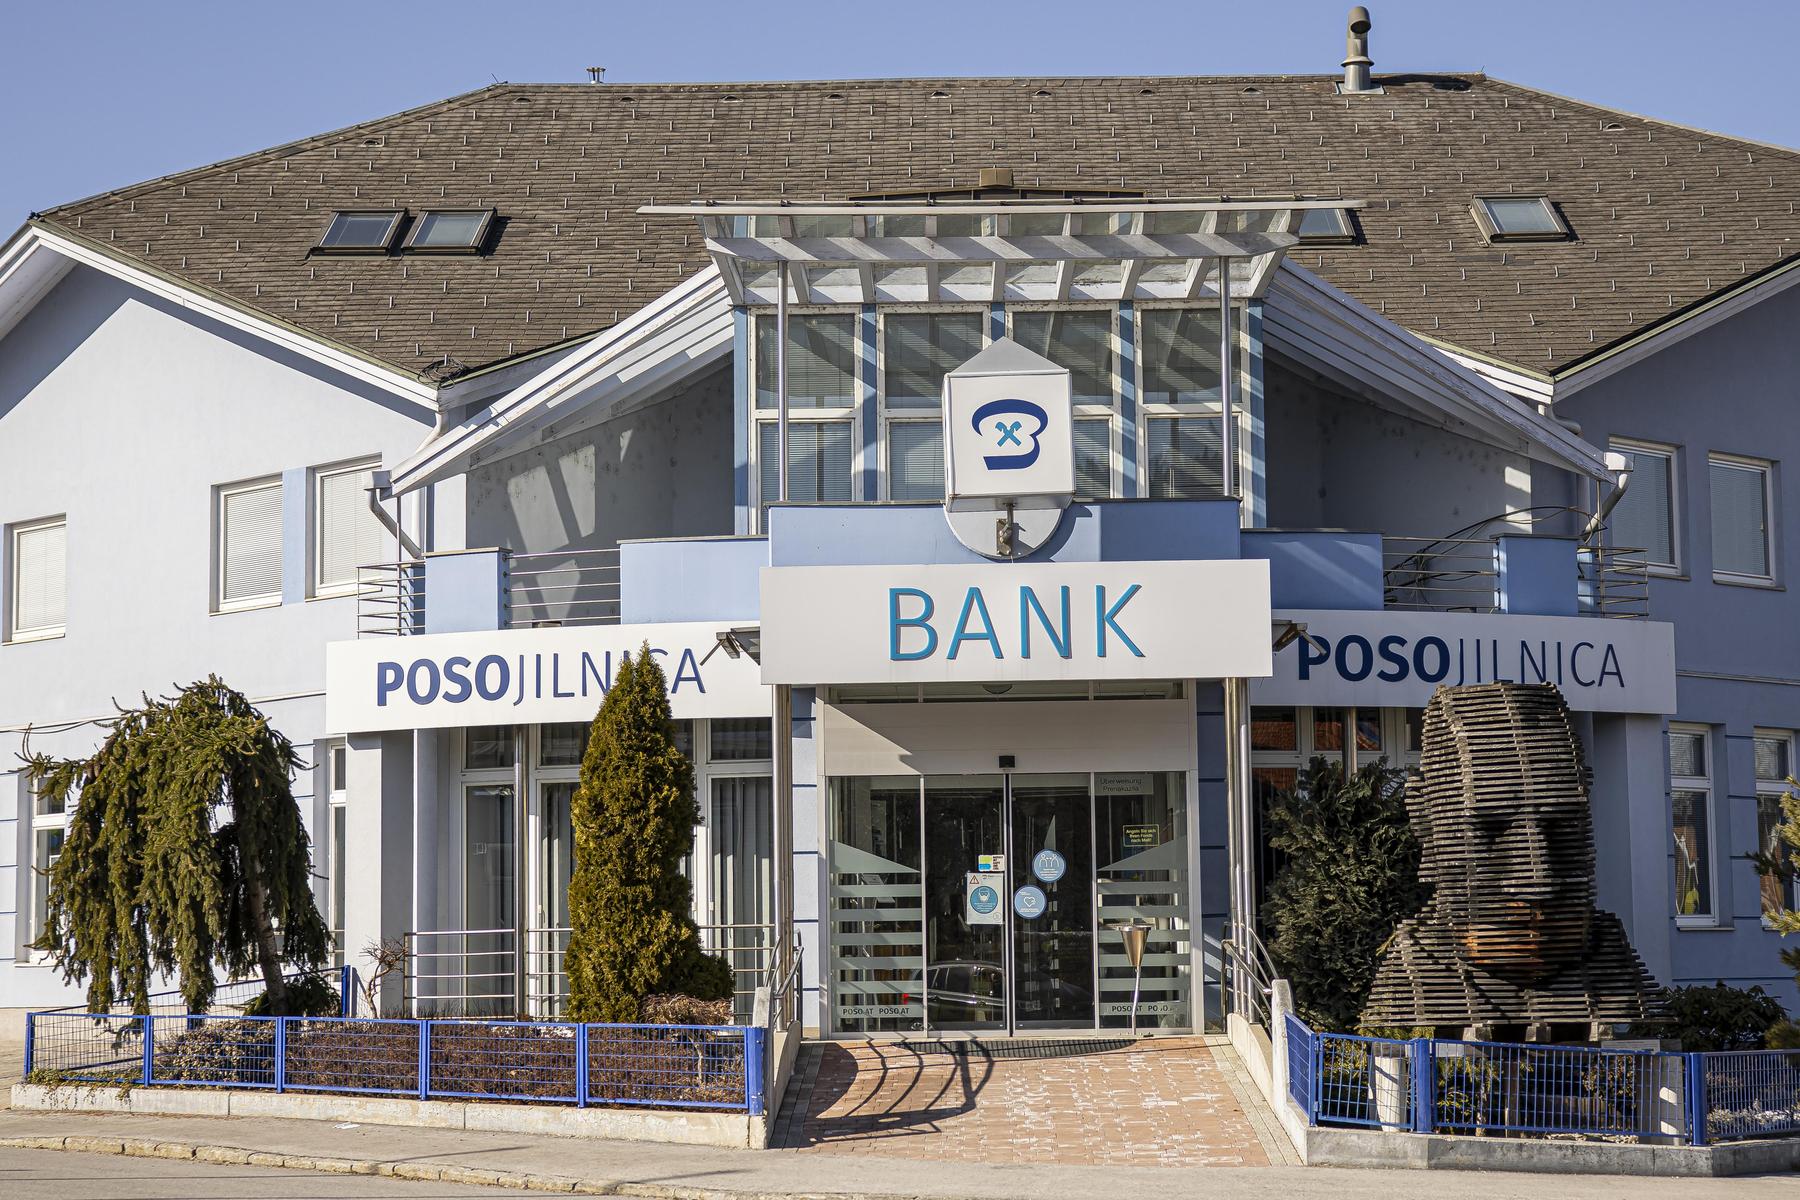 Nach Einsparungen: Posojilnica Bank wieder auf Kurs: 4,8 Millionen Euro Betriebsergebnis